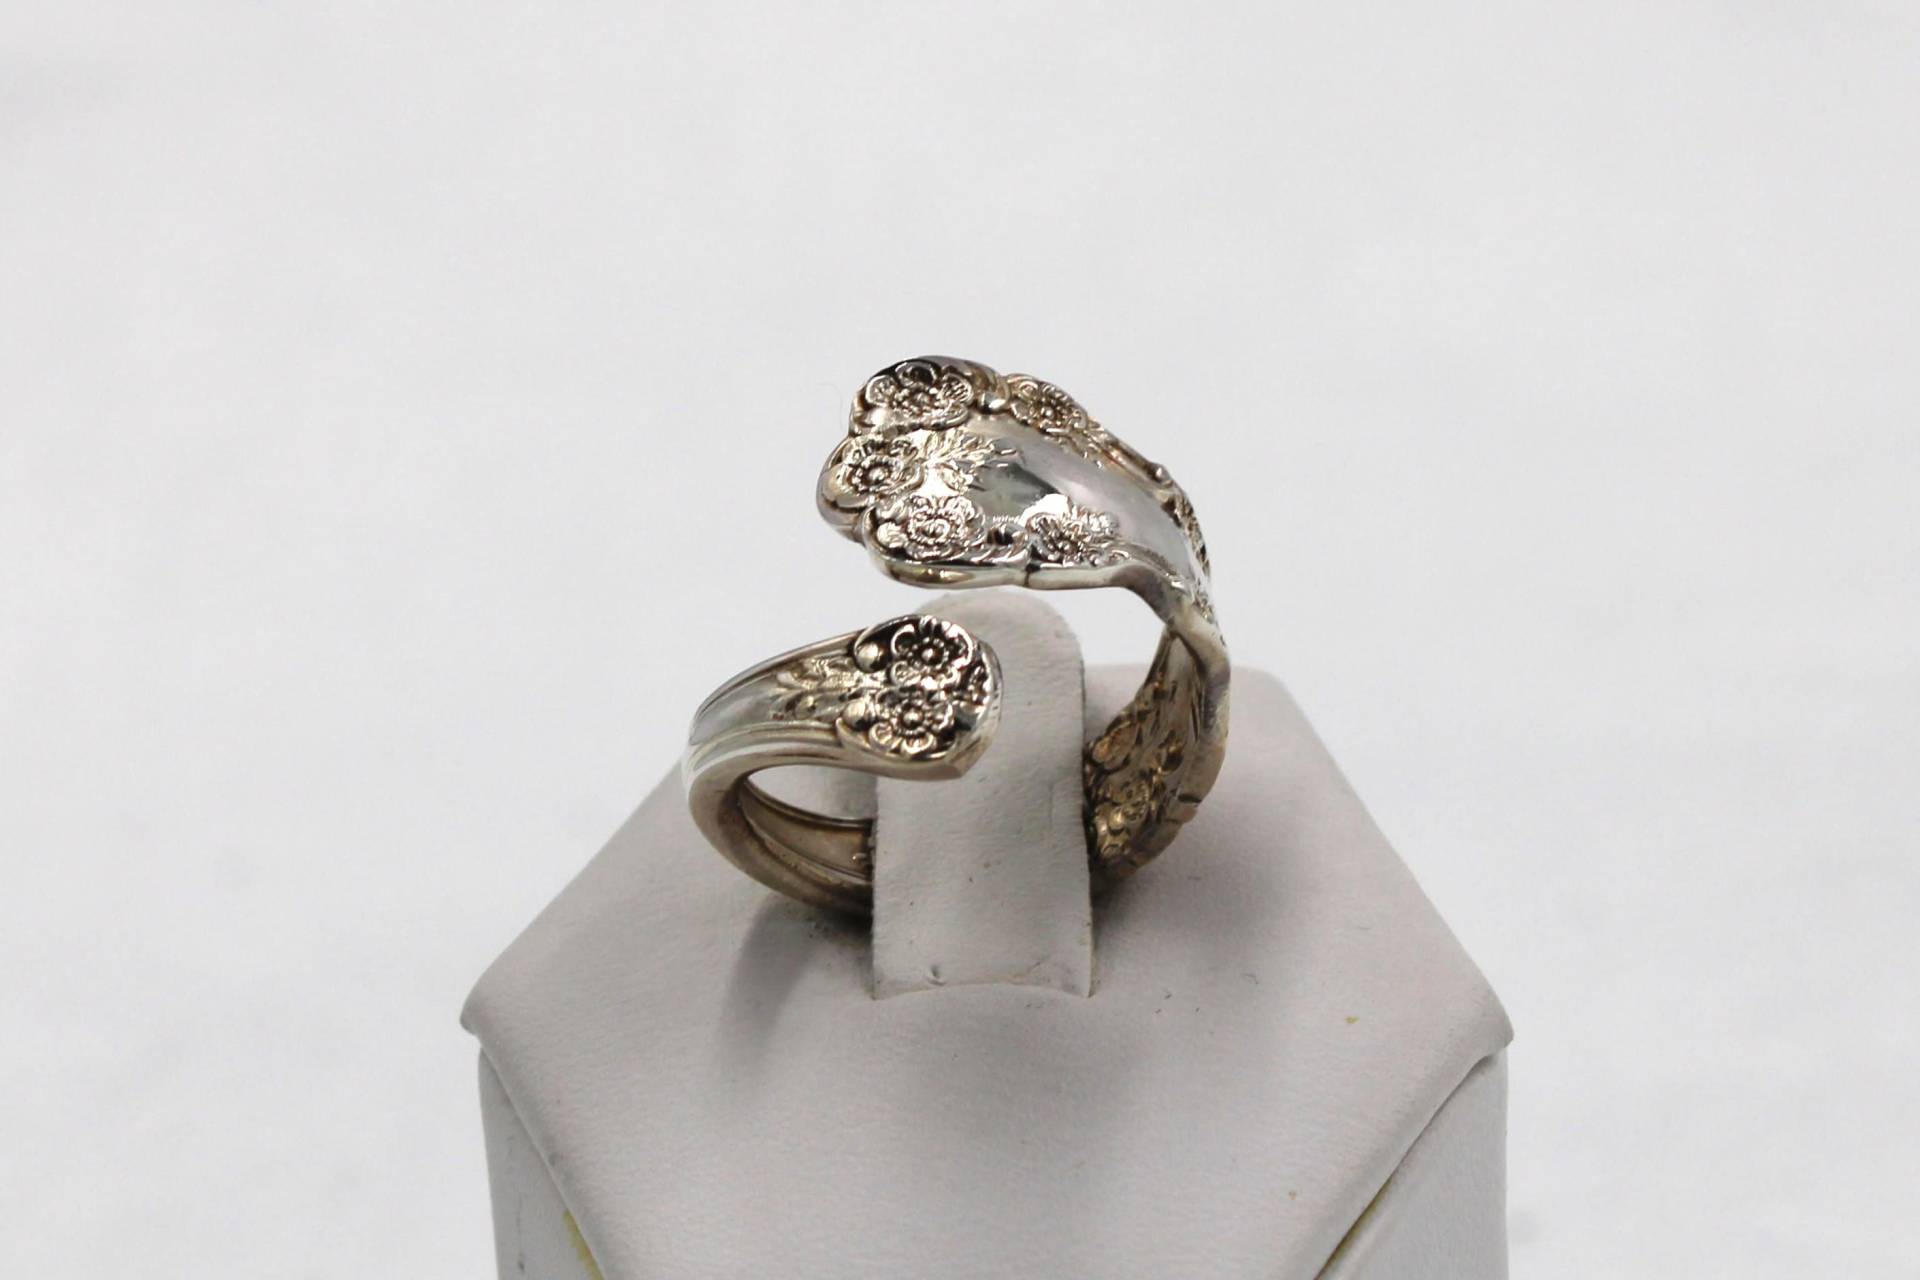 Vintage Blumen Design Handarbeit Sterling Silber Verstellbarer Löffel Ring Größe 5 3/4 Versandkostenfrei #14Fl-Sr20 von rubysvintagejewelry